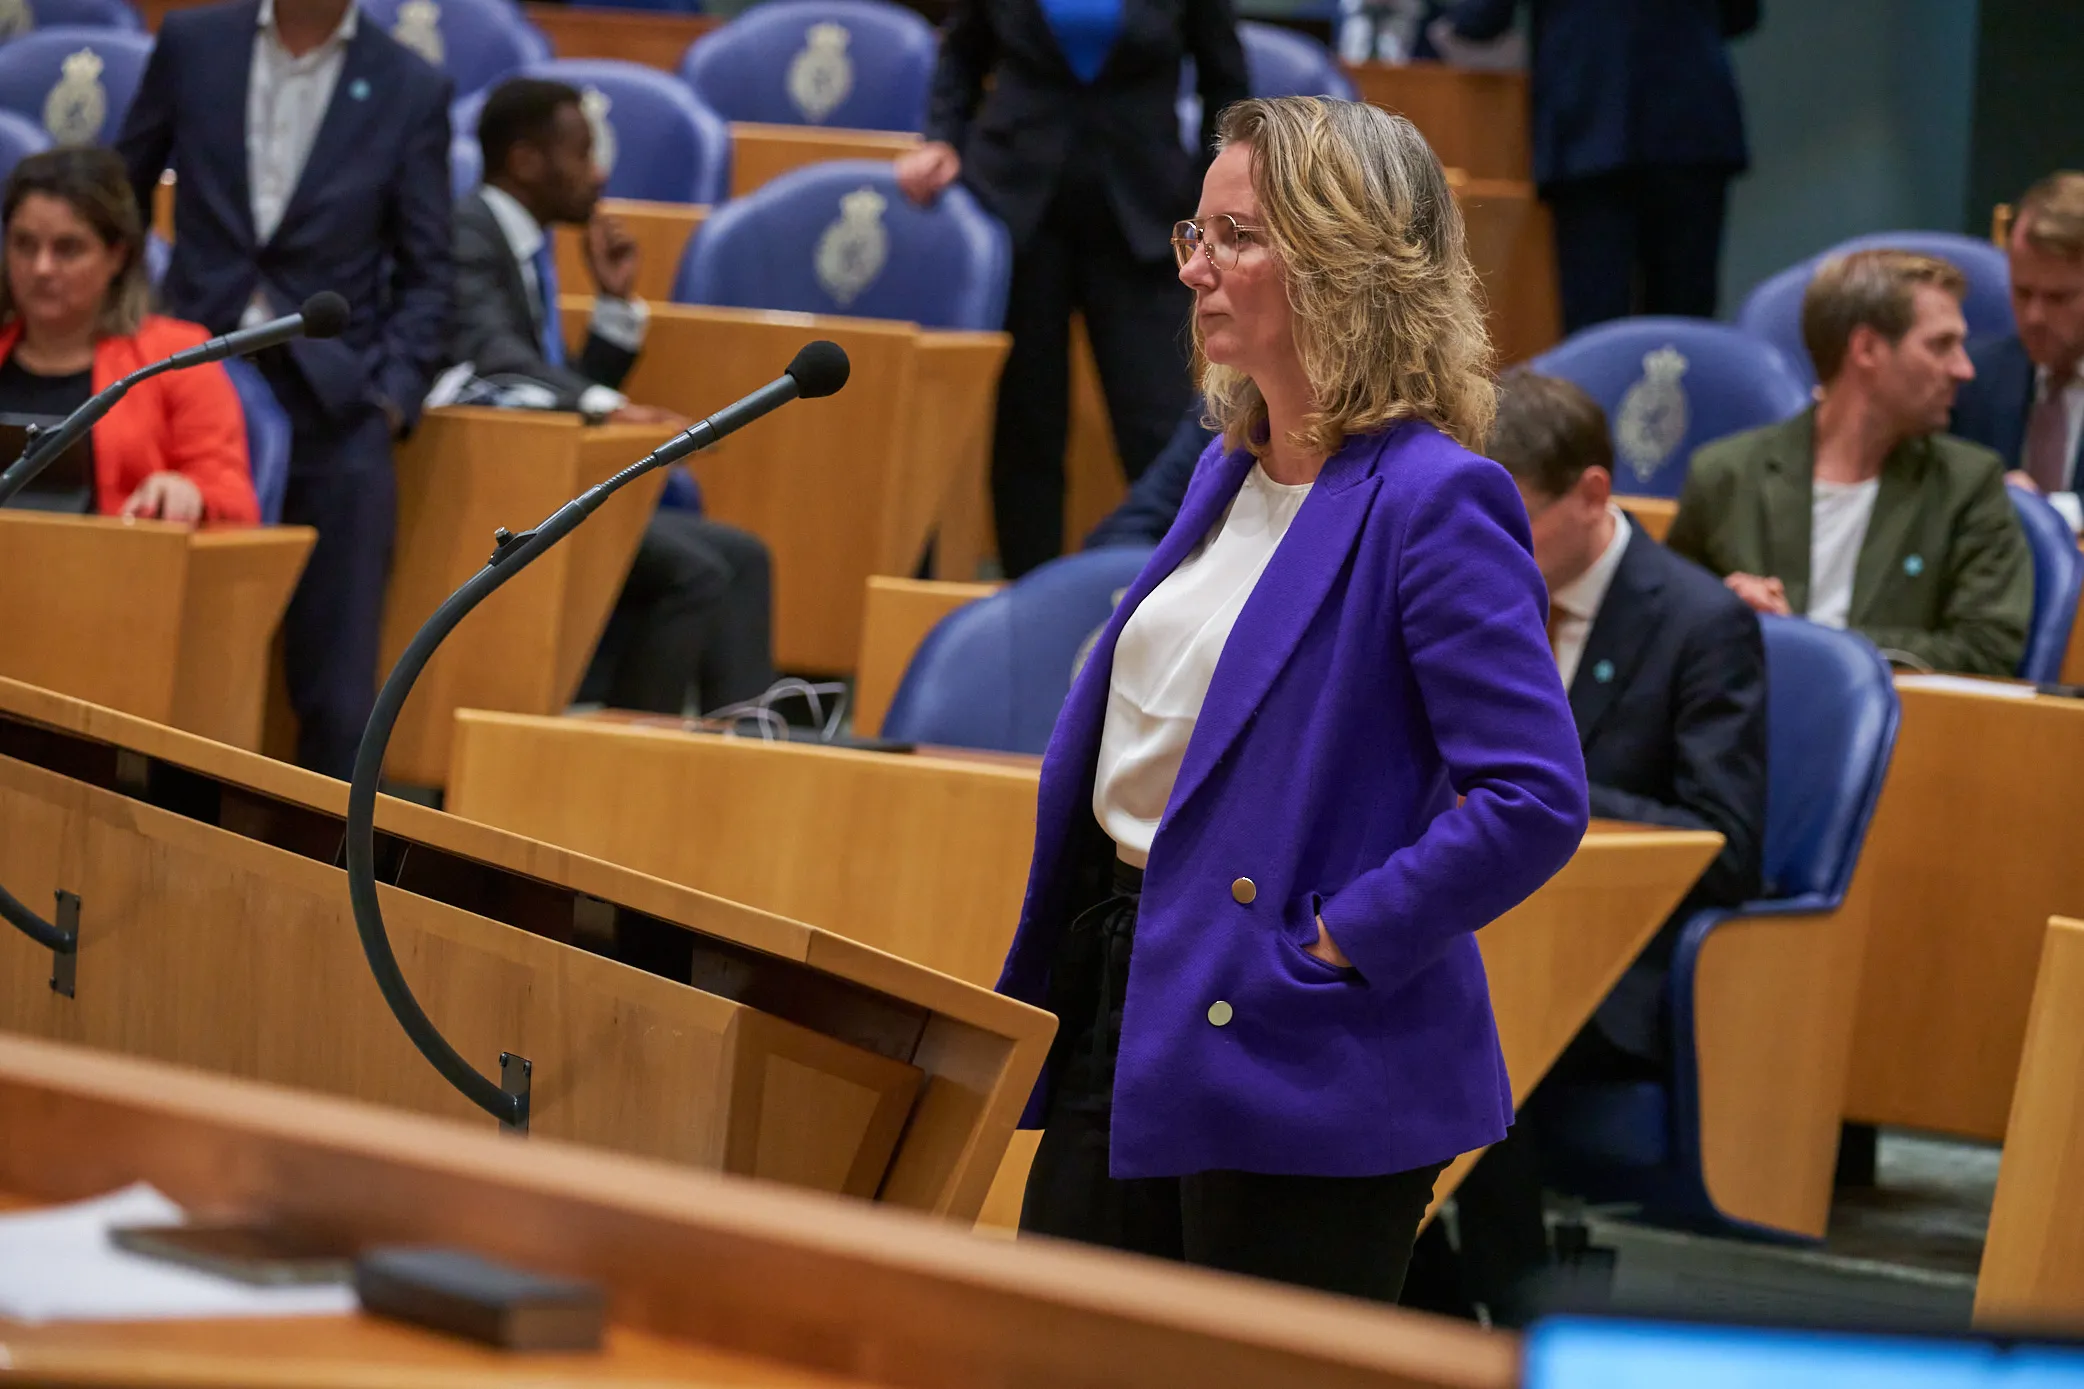 Fleur Agema (PVV) haalt uit naar Marion Koopmans: "Zoveel dédain, zoveel haat!"